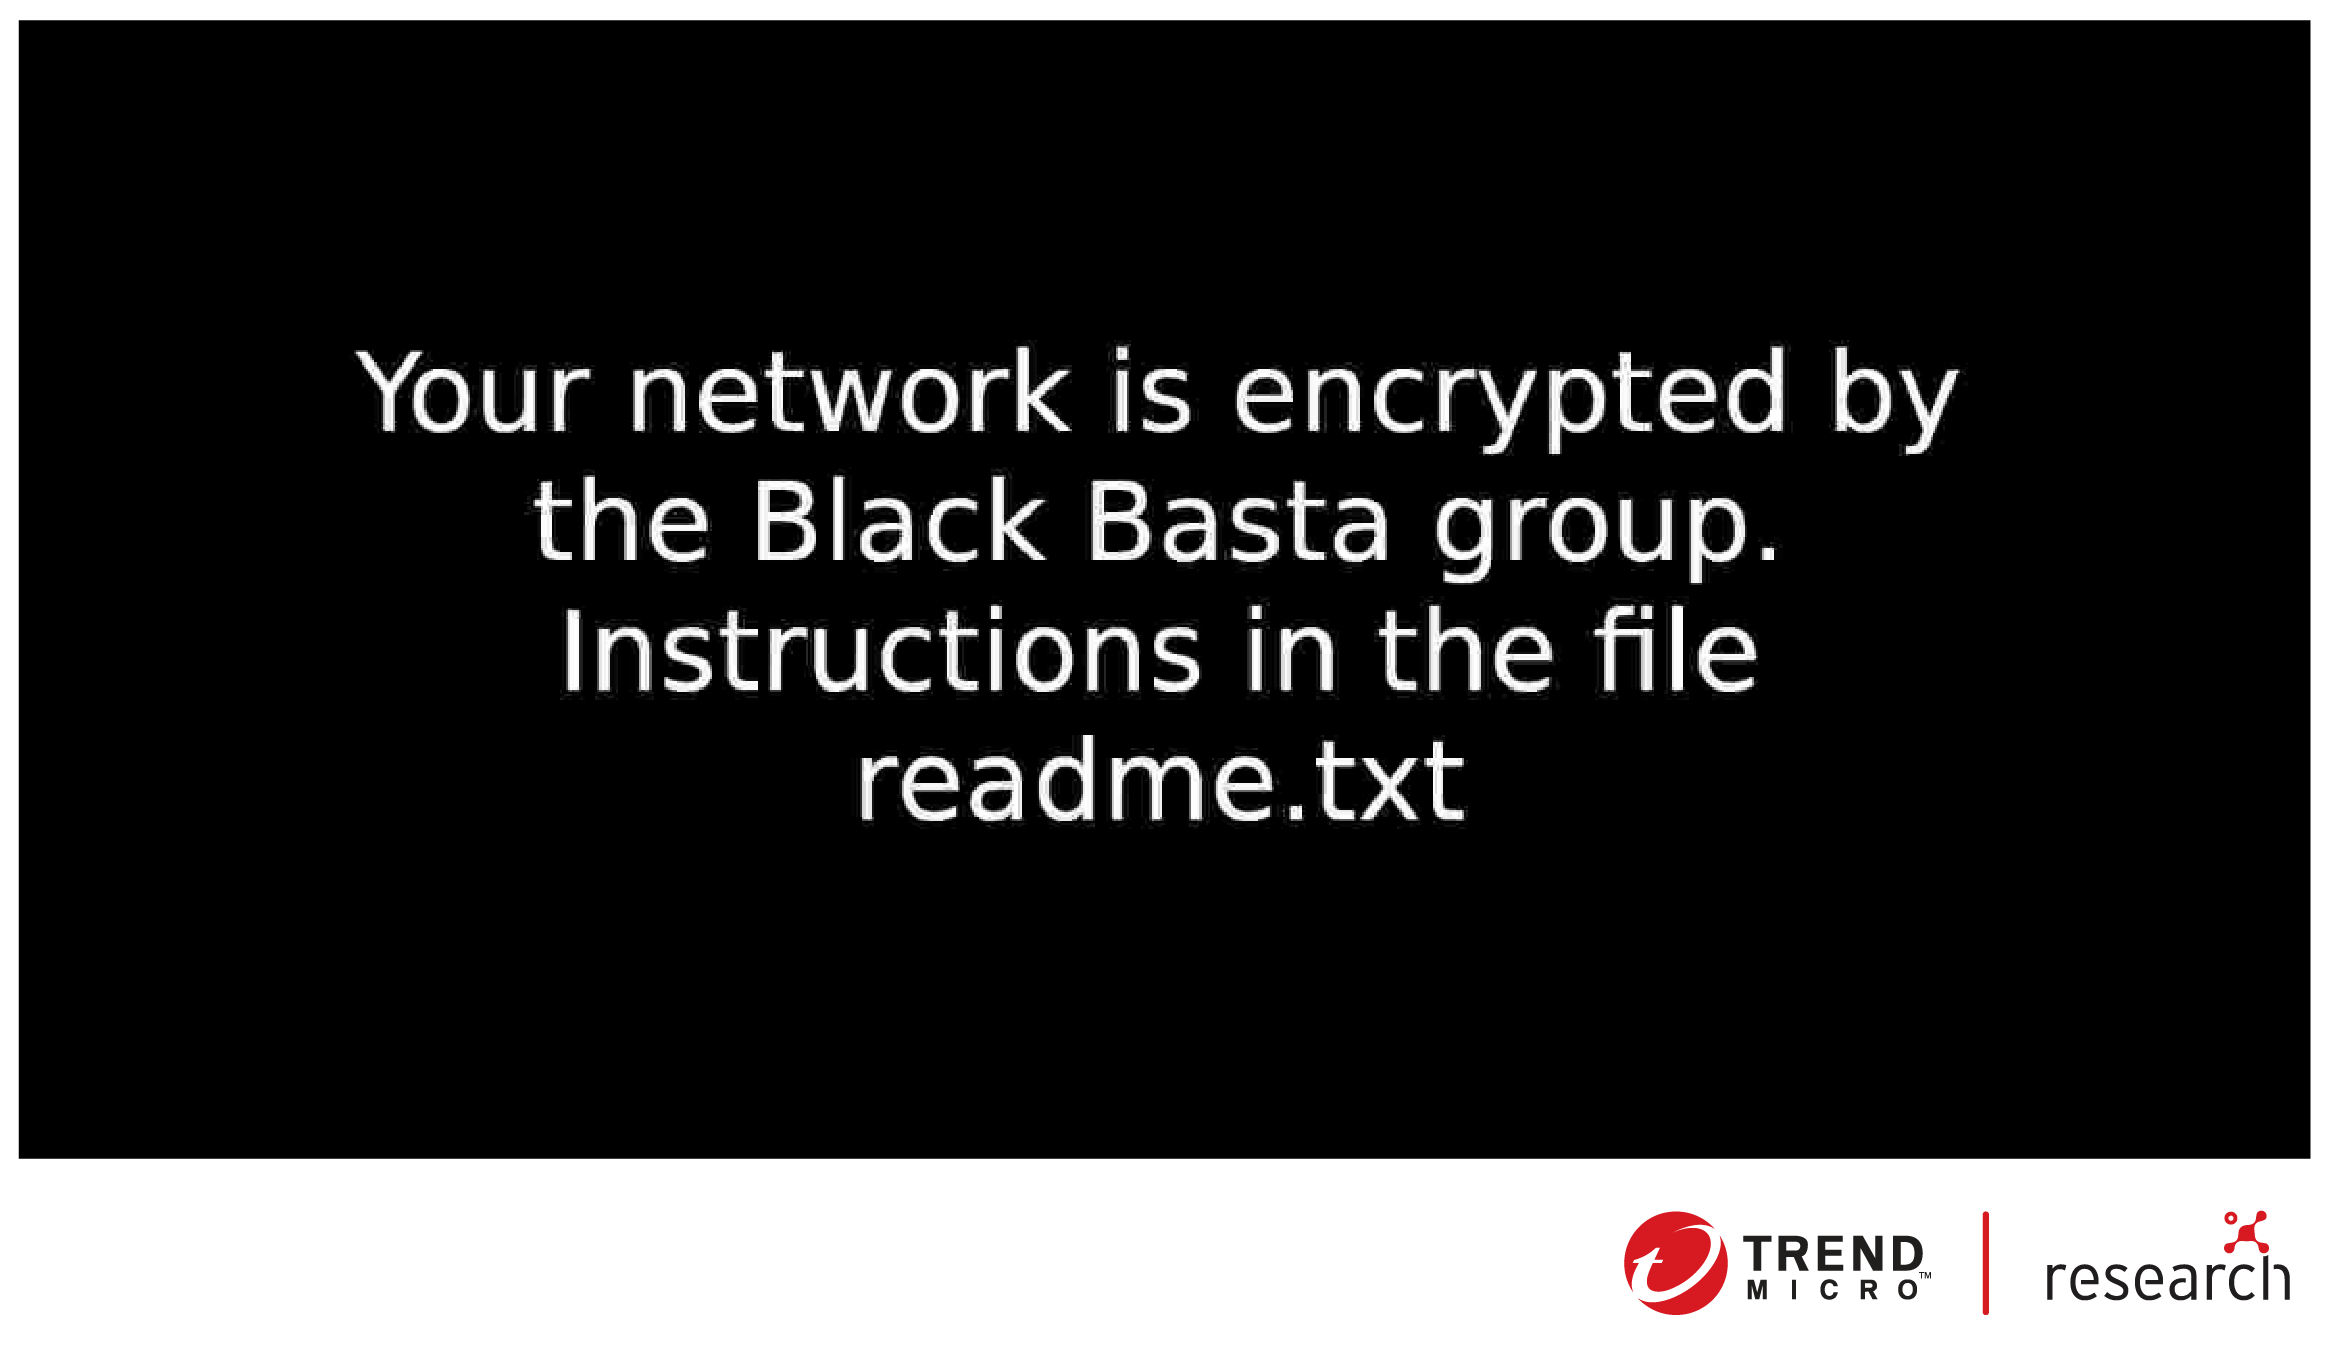 Le fond d'écran créé par Black Basta à l'aide du fichier .jpg déposé dans le dossier %temp%